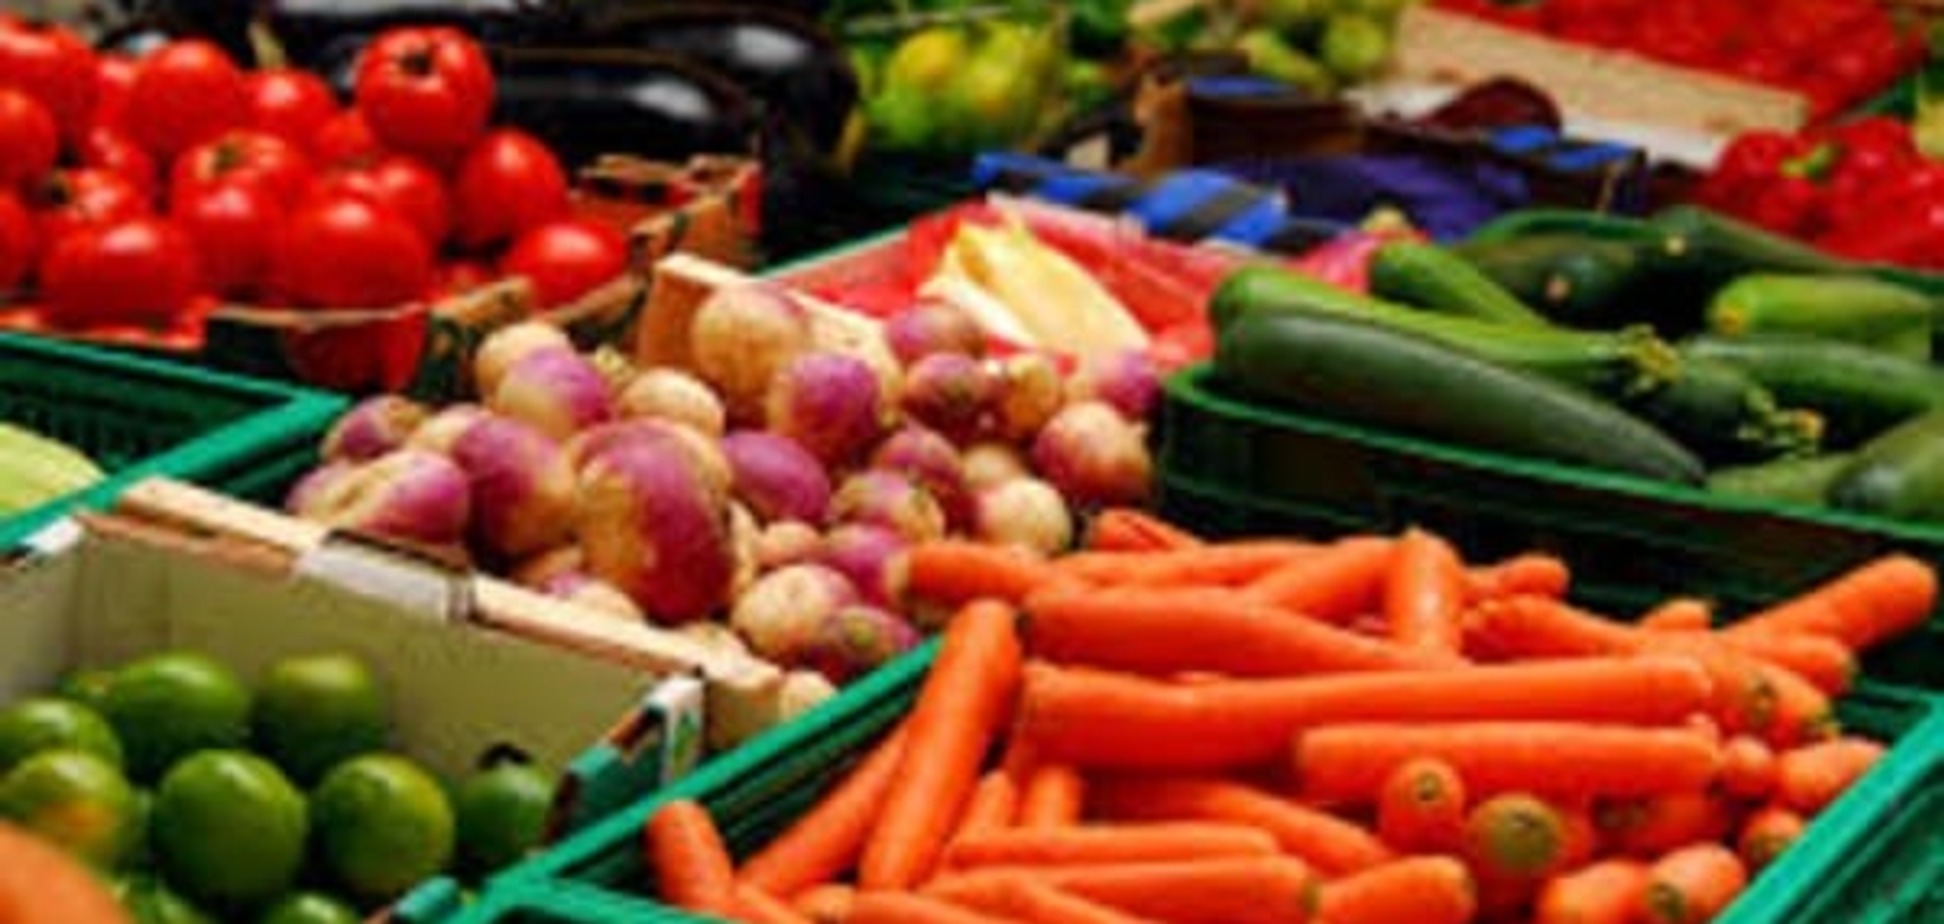 Авитаминоз кошельков: украинцы стали меньше покупать овощей и фруктов